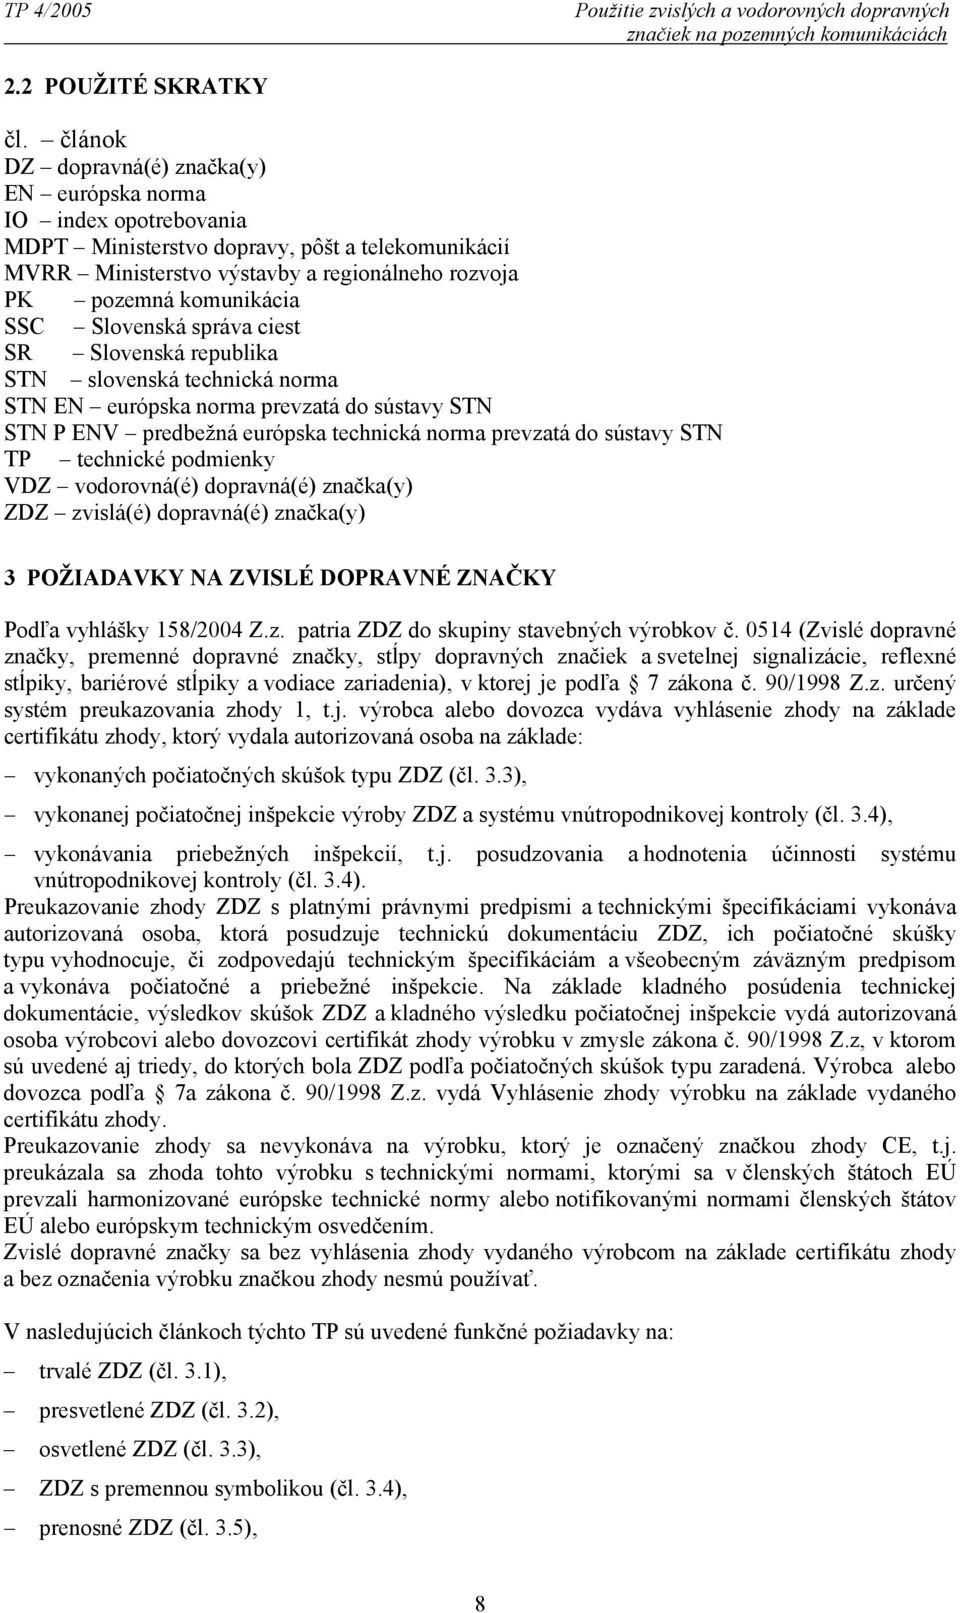 Slovenská sráva ciest SR Slovenská reublika STN slovenská technická norma STN EN euróska norma revzatá do sústavy STN STN P ENV redbežná euróska technická norma revzatá do sústavy STN TP technické